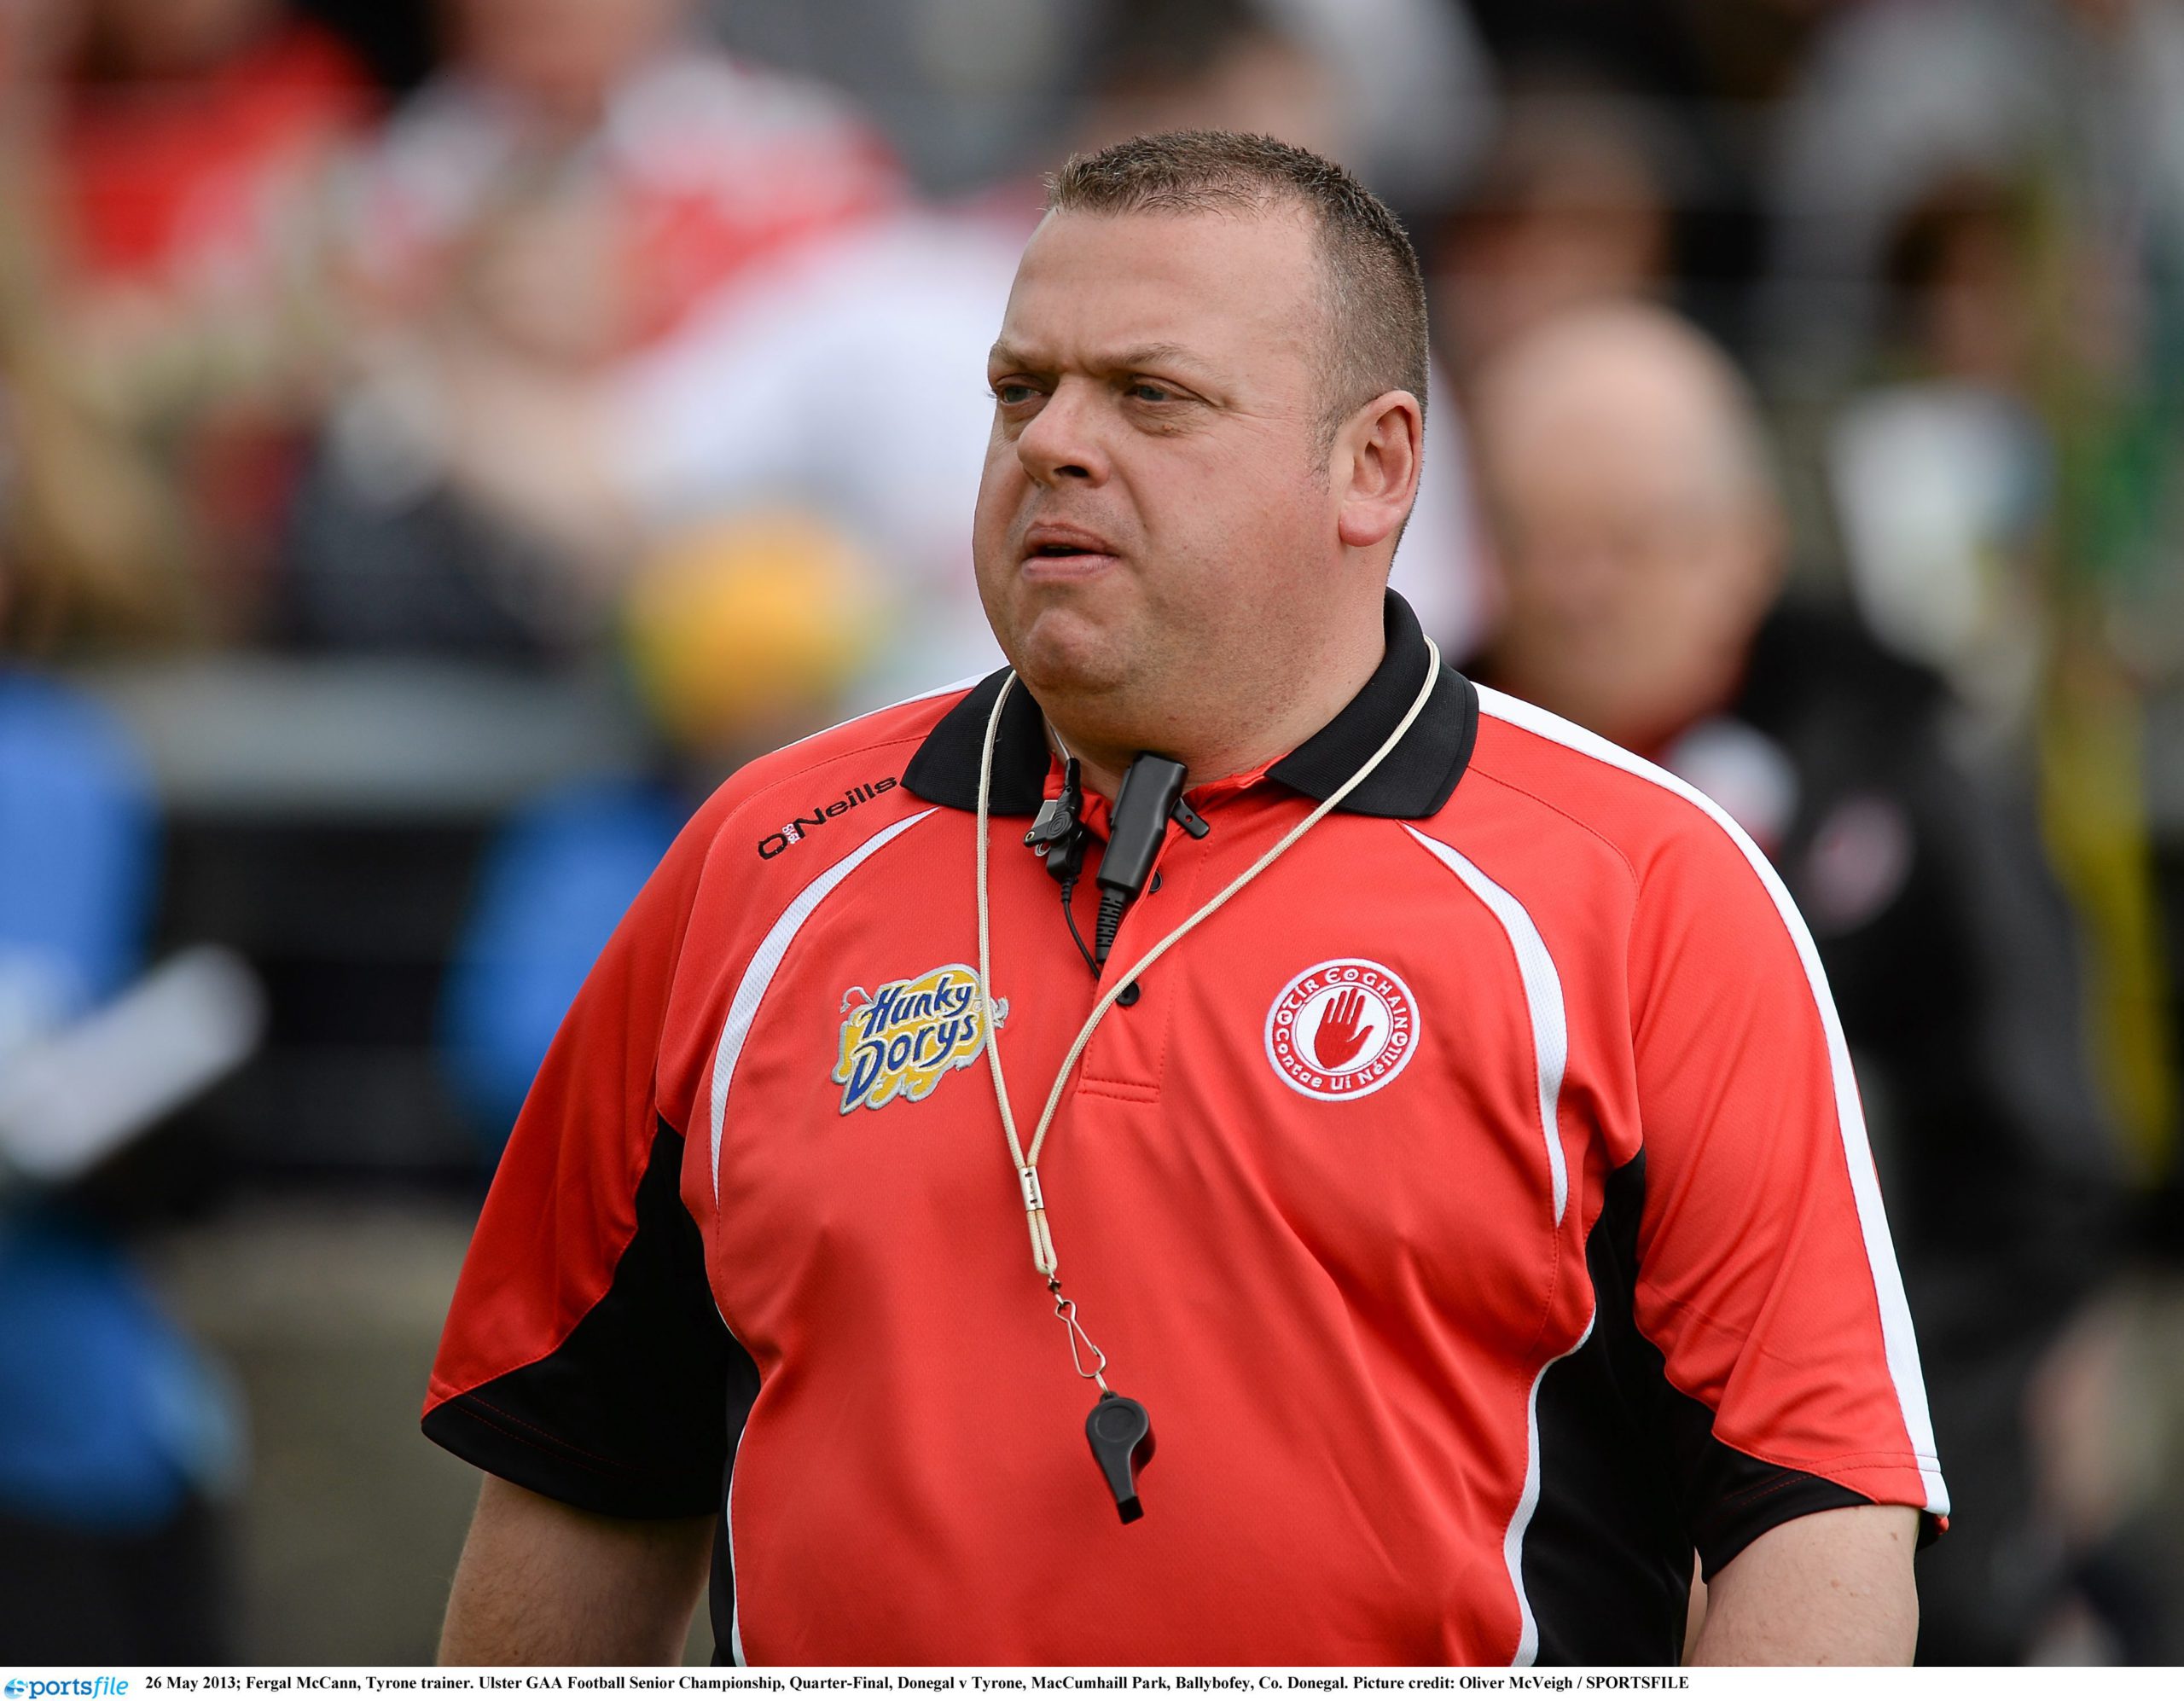 Death of former Tyrone All-Ireland winning coach